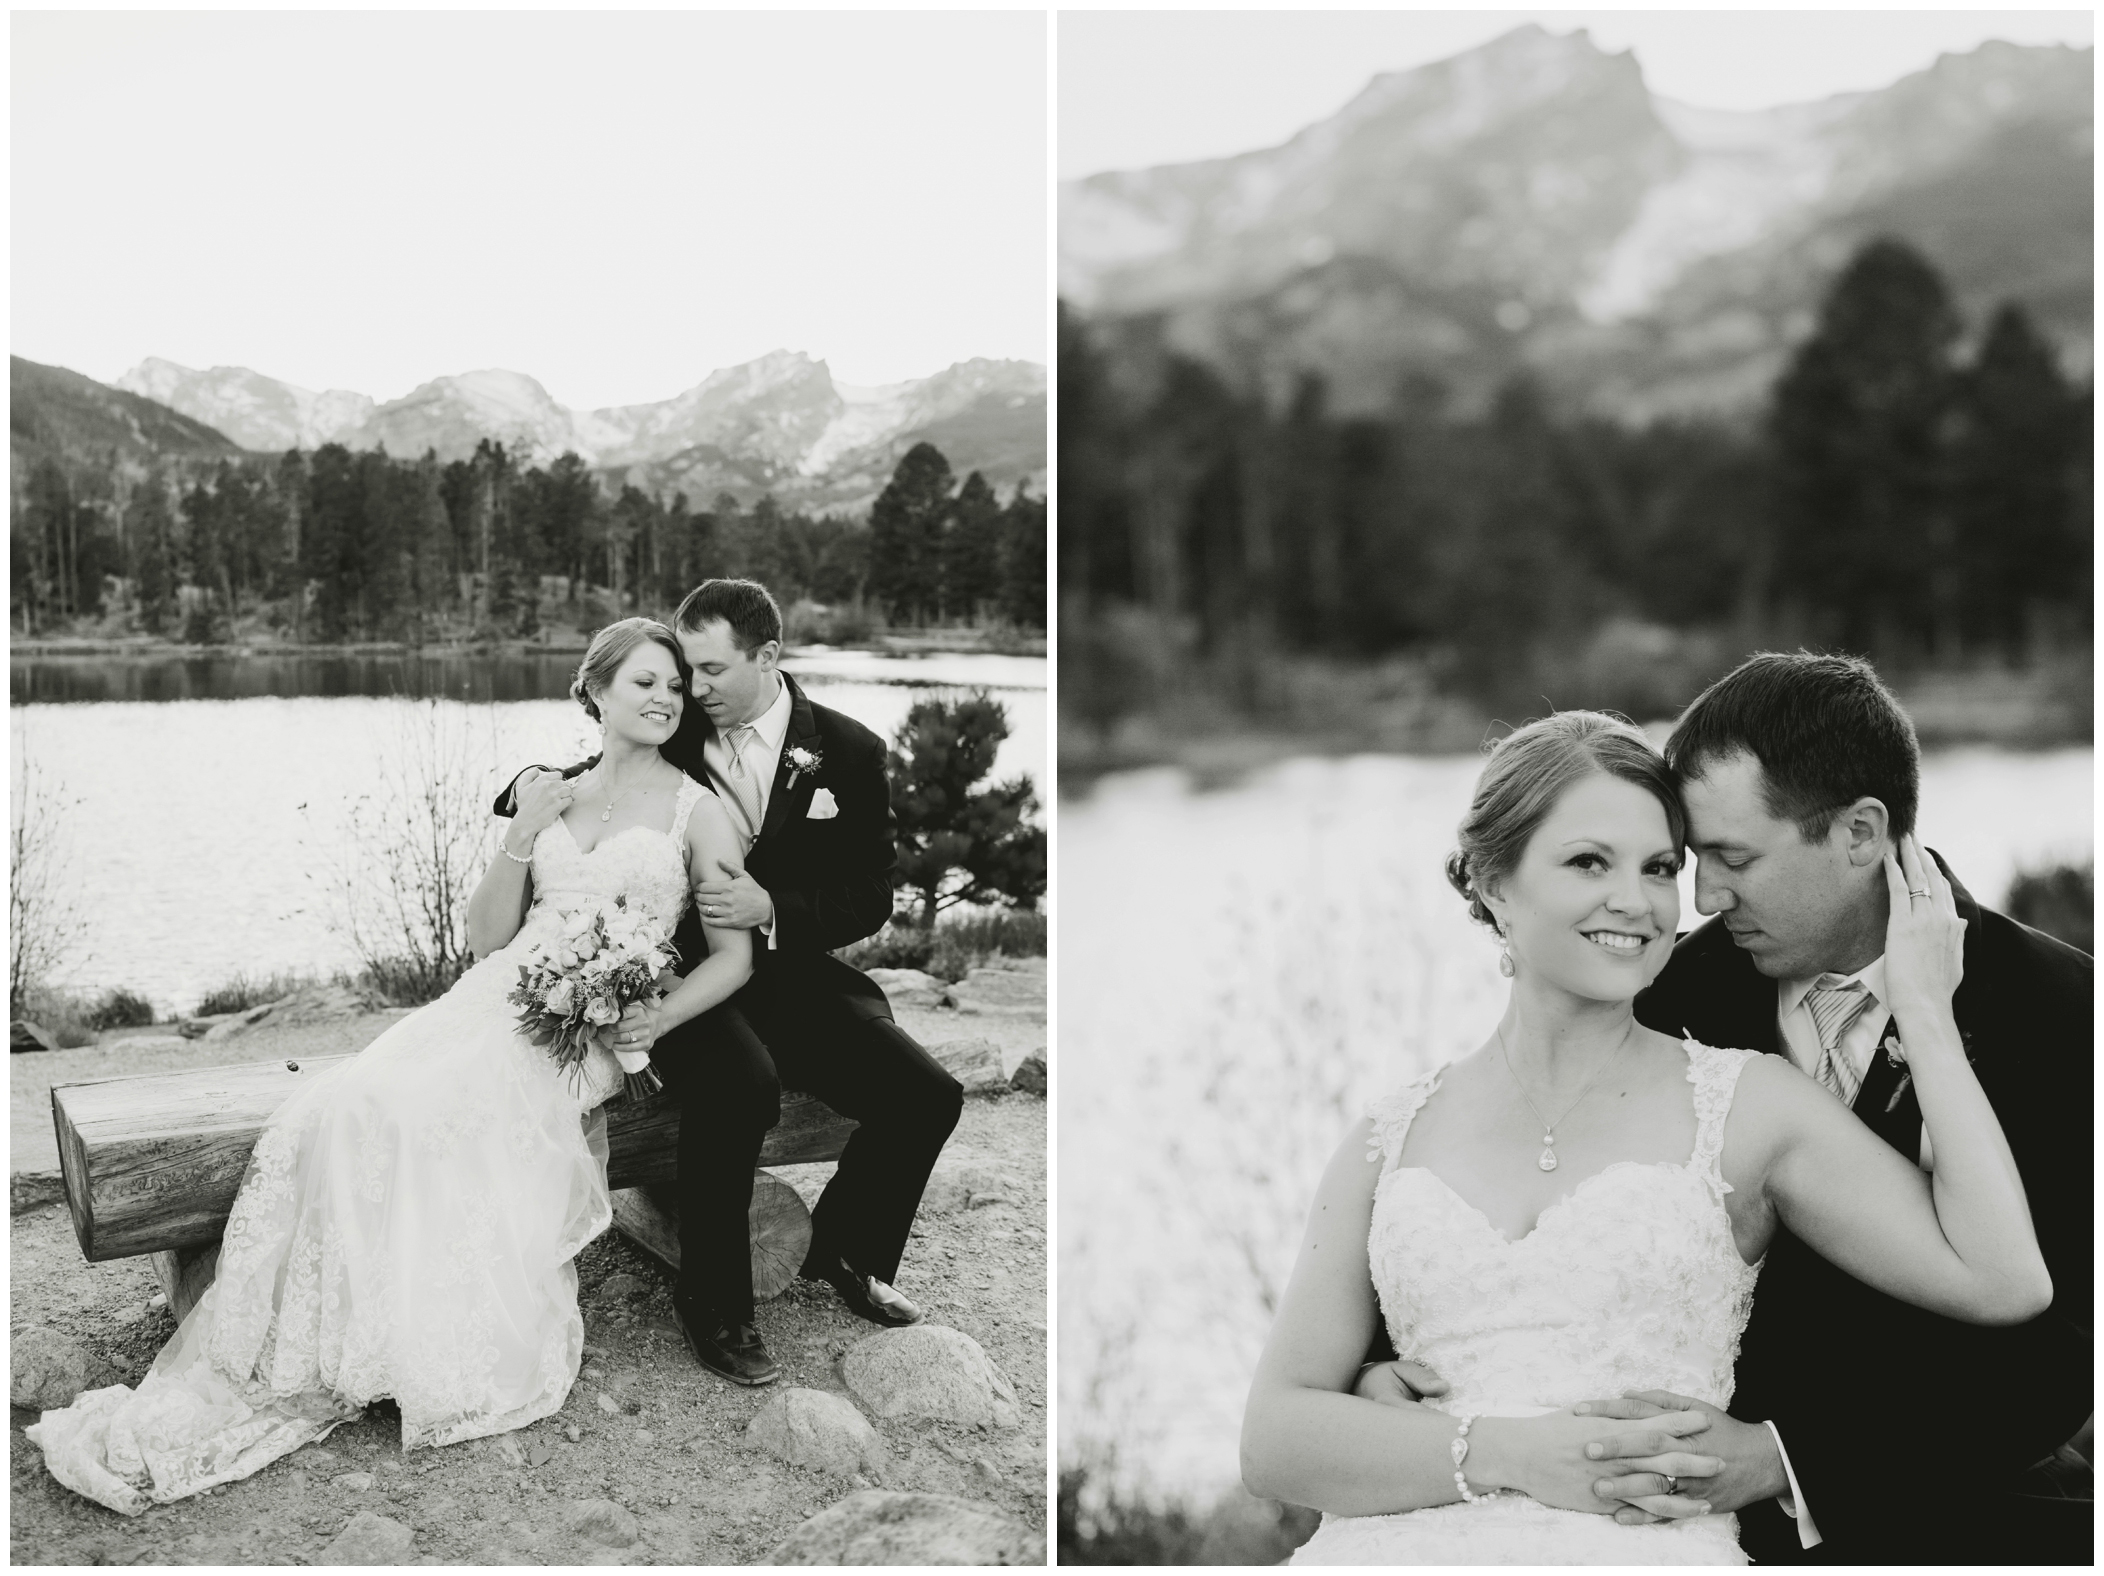 Estes Park wedding photography at Sprague Lake